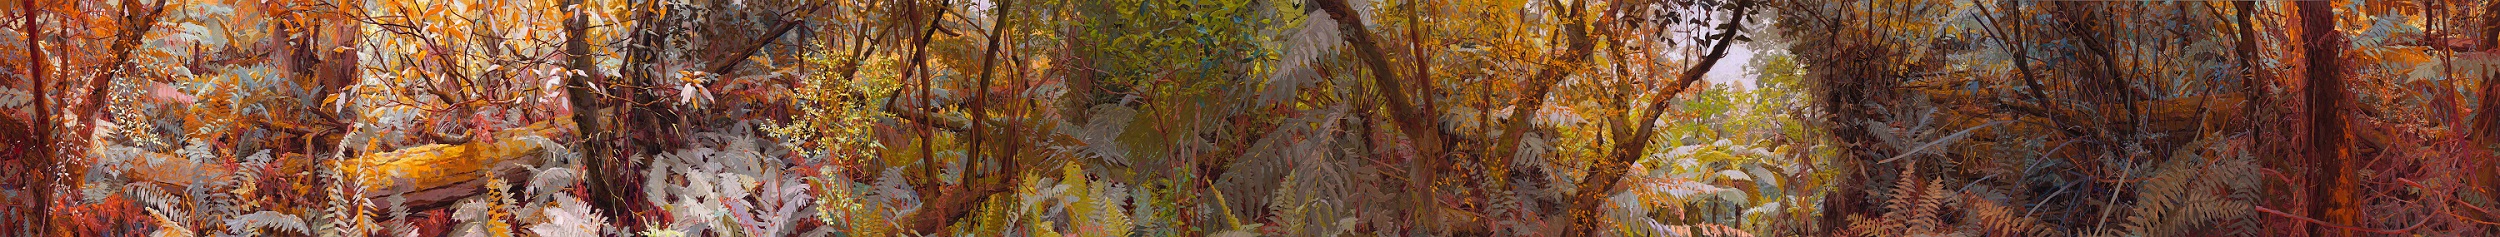 Mary-Tonkin-Ramble-Kalorama-2017-19-oil-on-linen-180-x-1890-cm